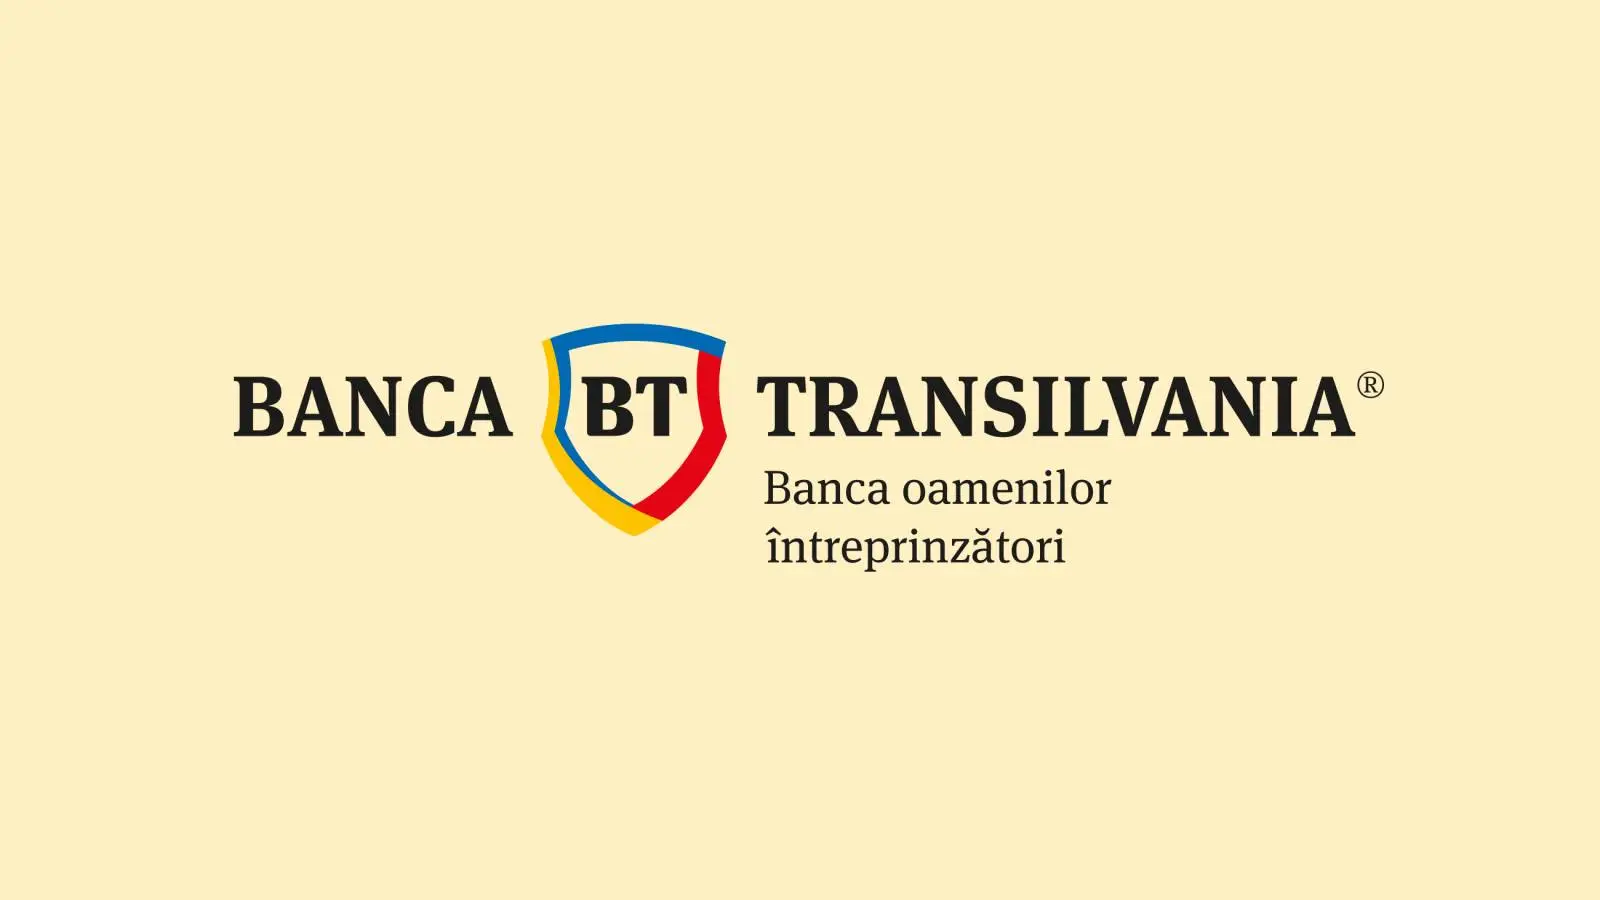 Vigtig meddelelse om BANCA Transilvania GRATIS til rumænske kunder